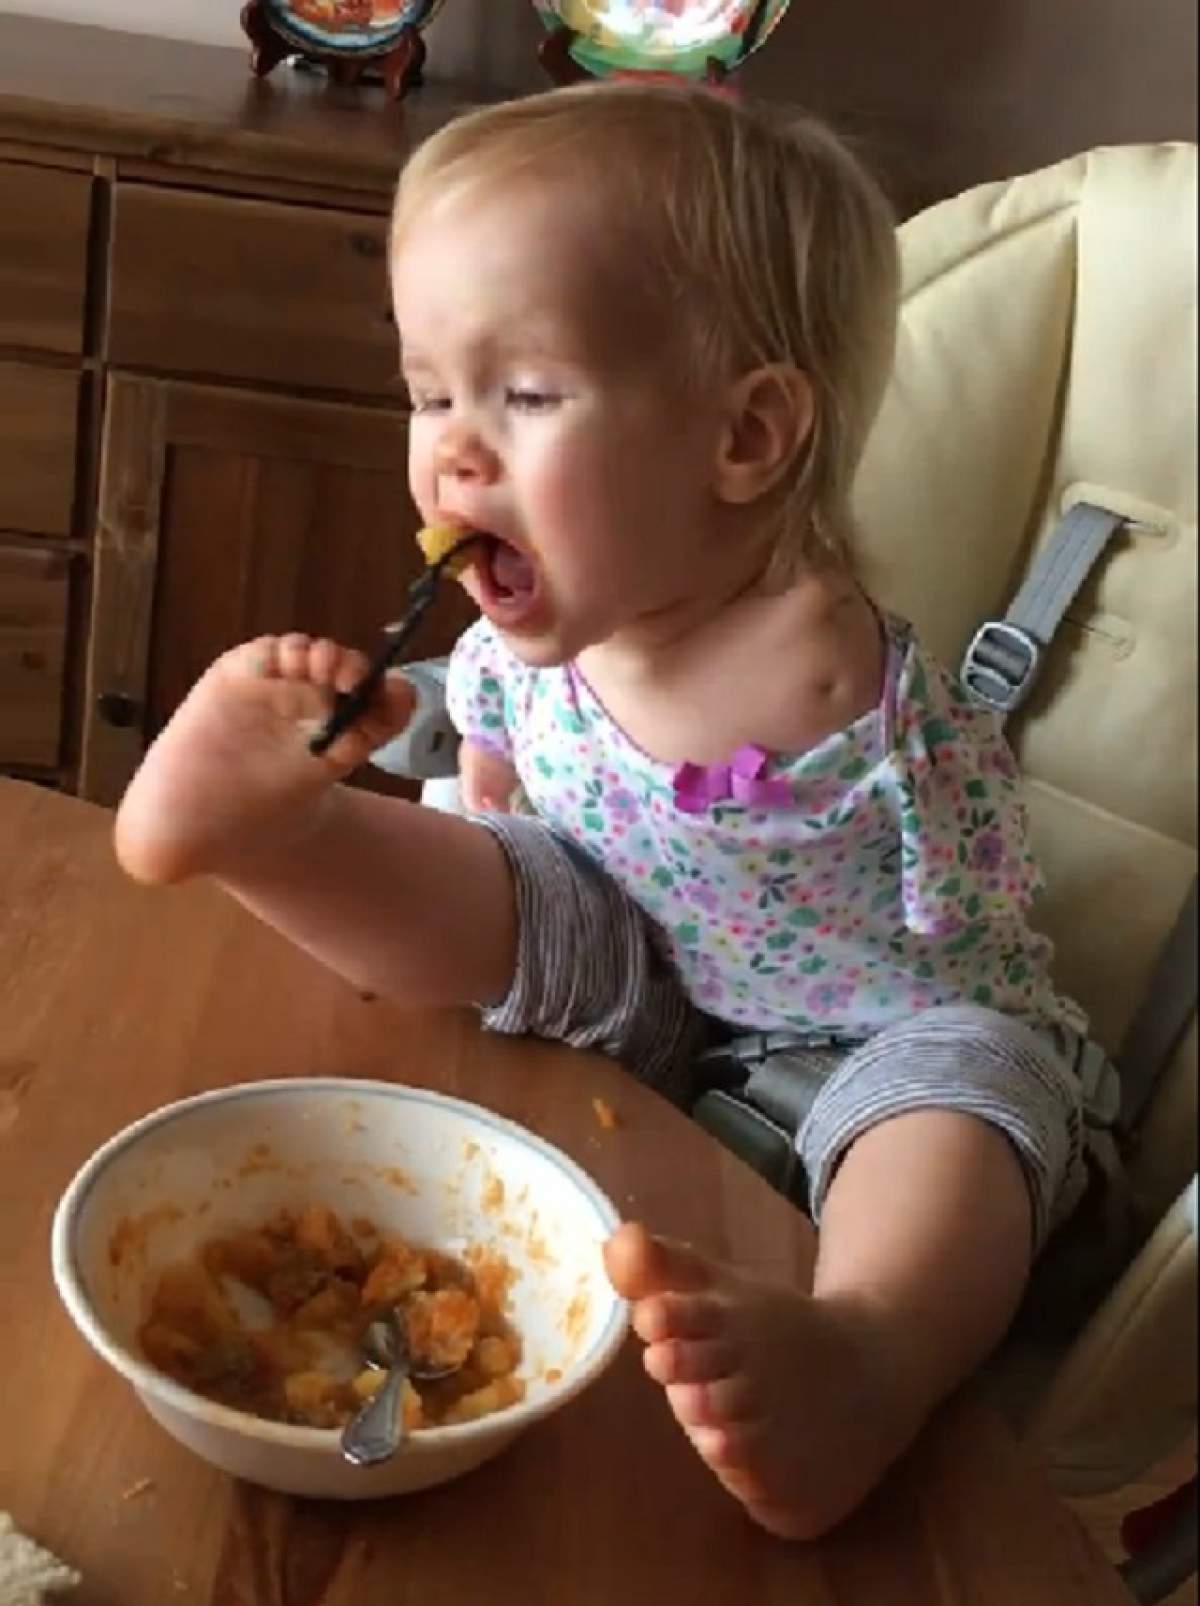 VIDEO / Imagini care pot afecta emoţional! O fetiţă se hrăneşte singură, fără mâini sau ajutor